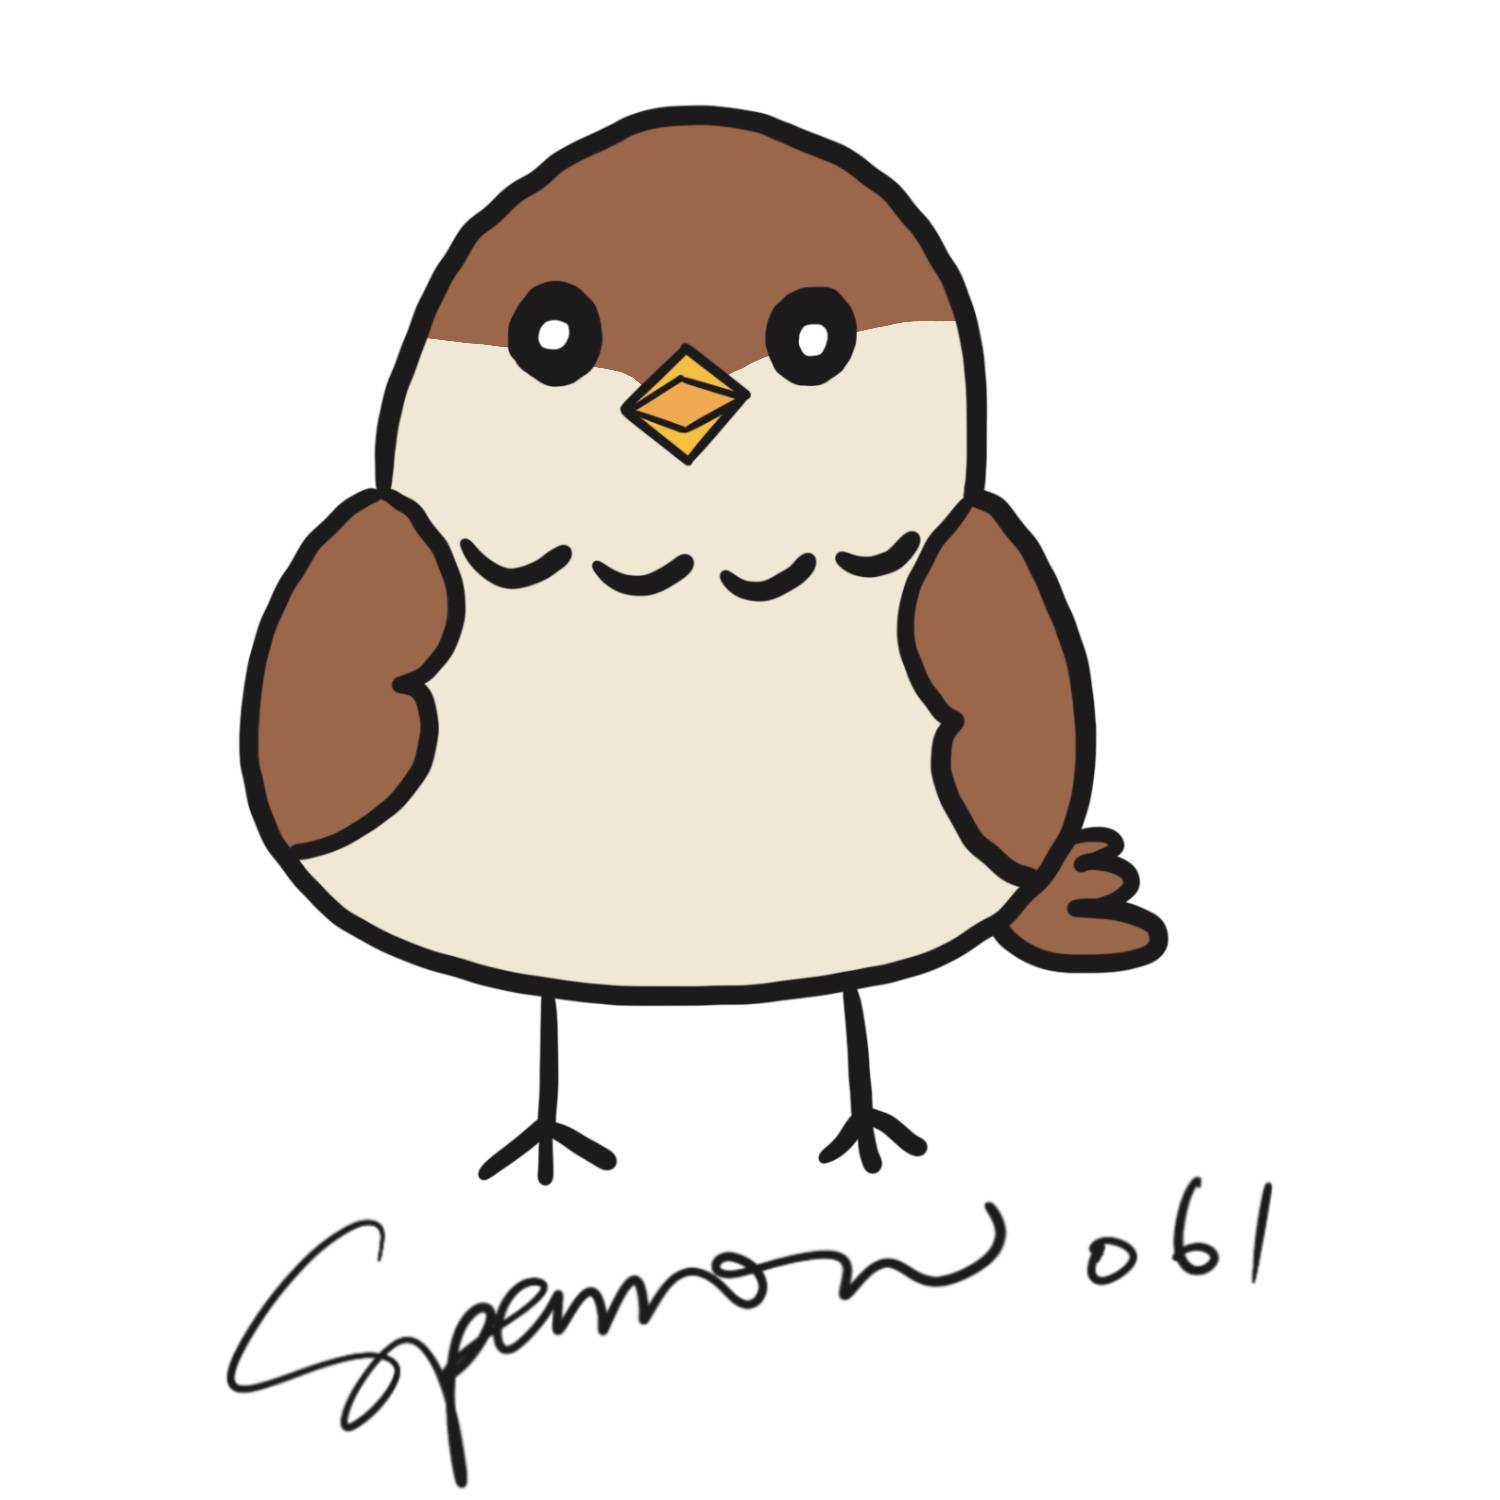 小麻雀樂團 Sparrow061